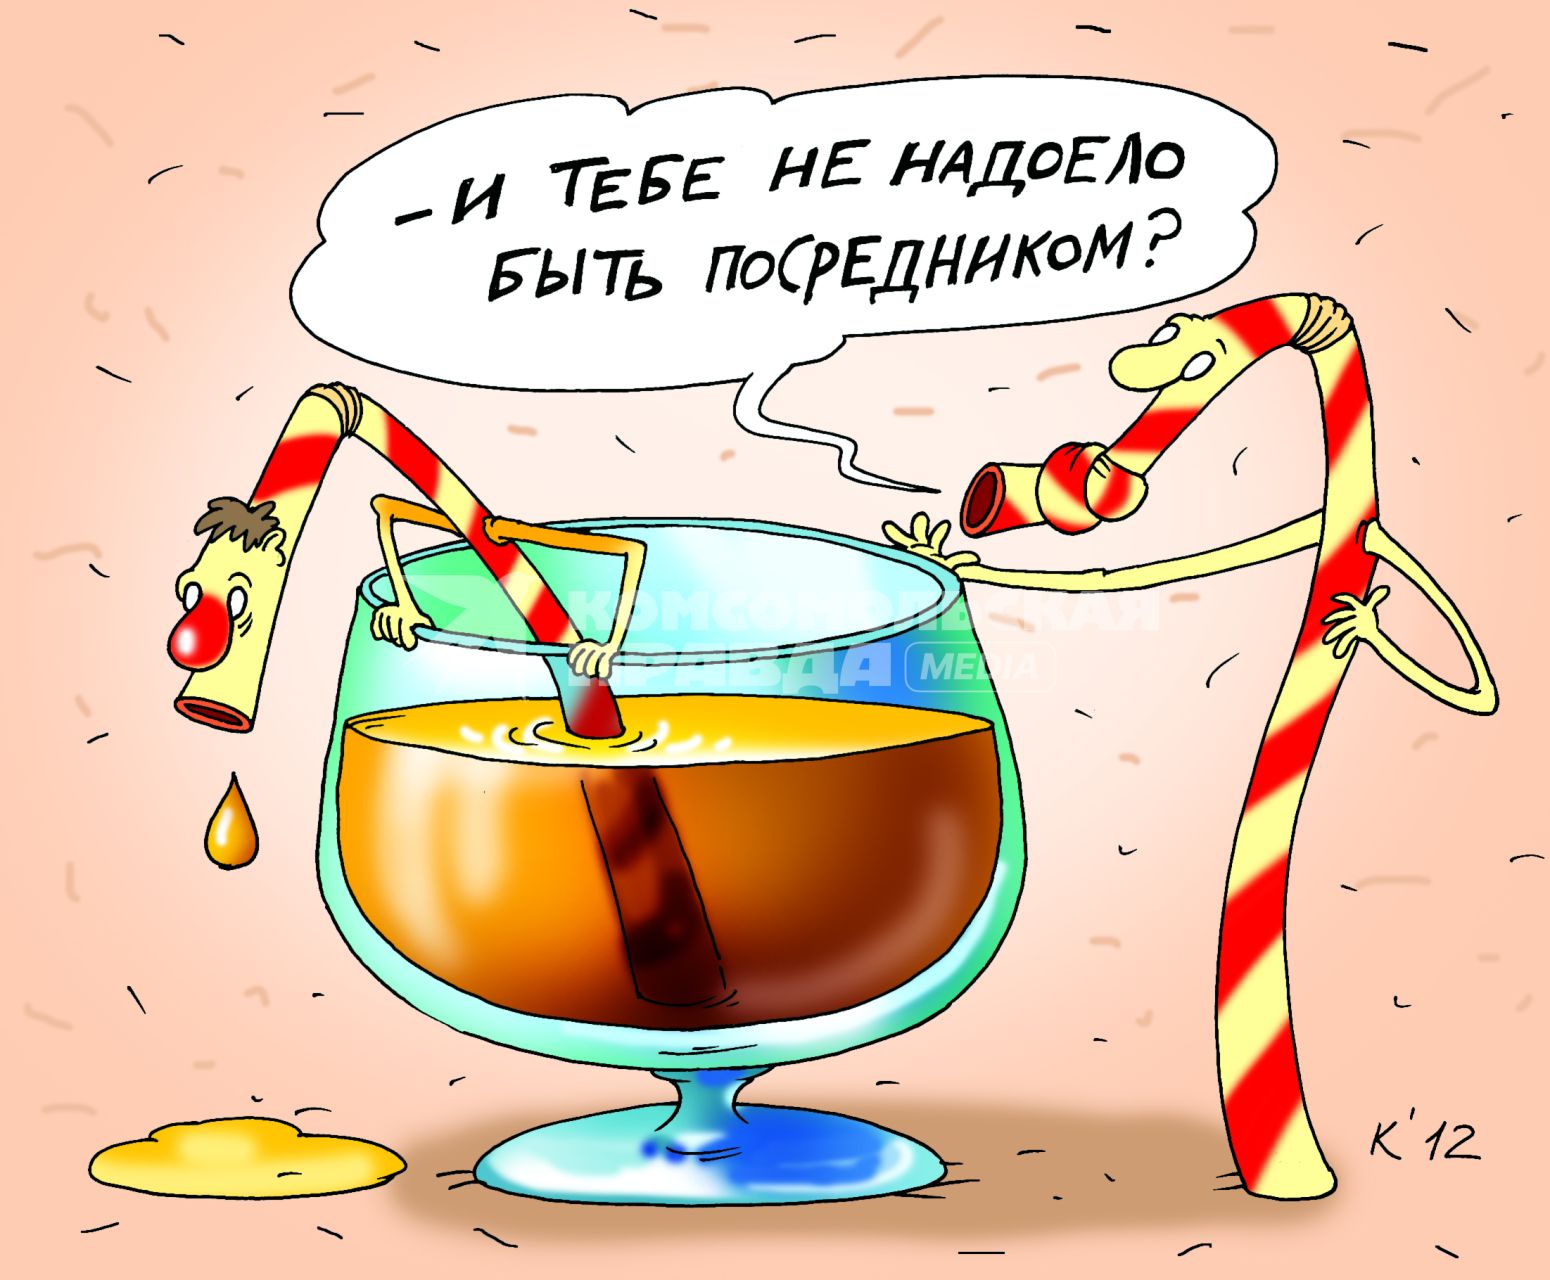 Карикатура на тему алкоголя.